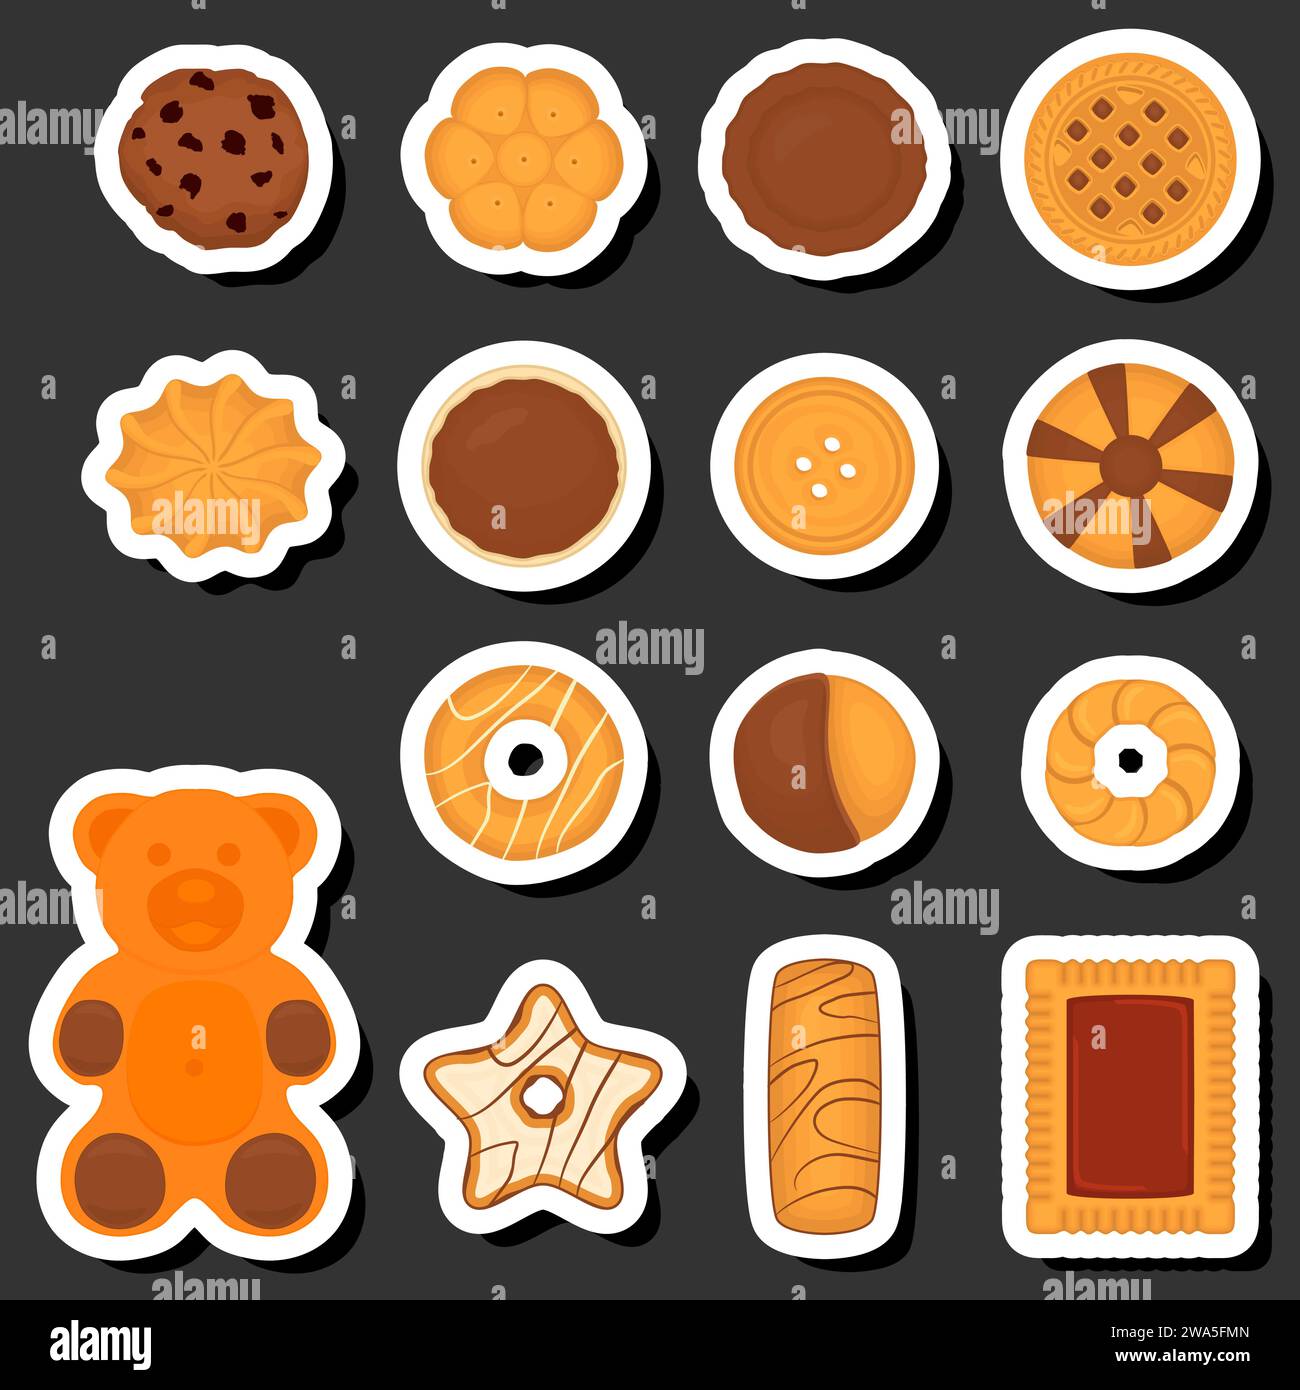 Illustrazione a tema: Biscotti freschi, dolci e gustosi, composti da vari ingredienti, biscotti di diversi alimenti commestibili, biscotti di design questo pasto fresco per re Illustrazione Vettoriale